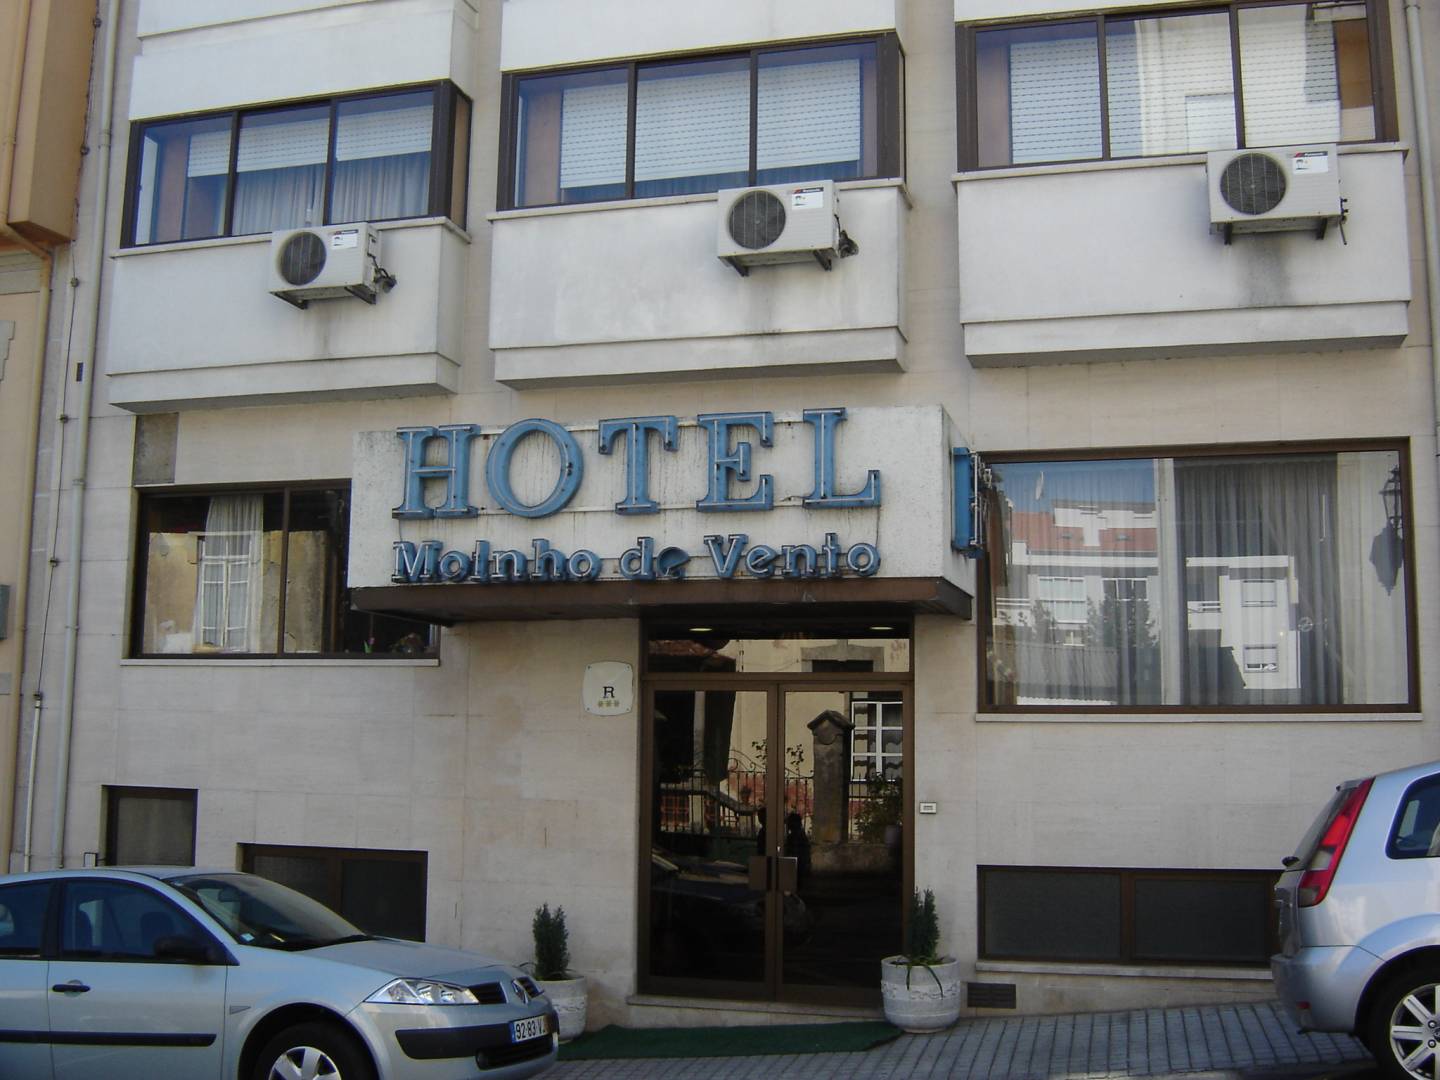 HOTEL MOINHO DE VENTO - Prices & Reviews (Viseu, Portugal)